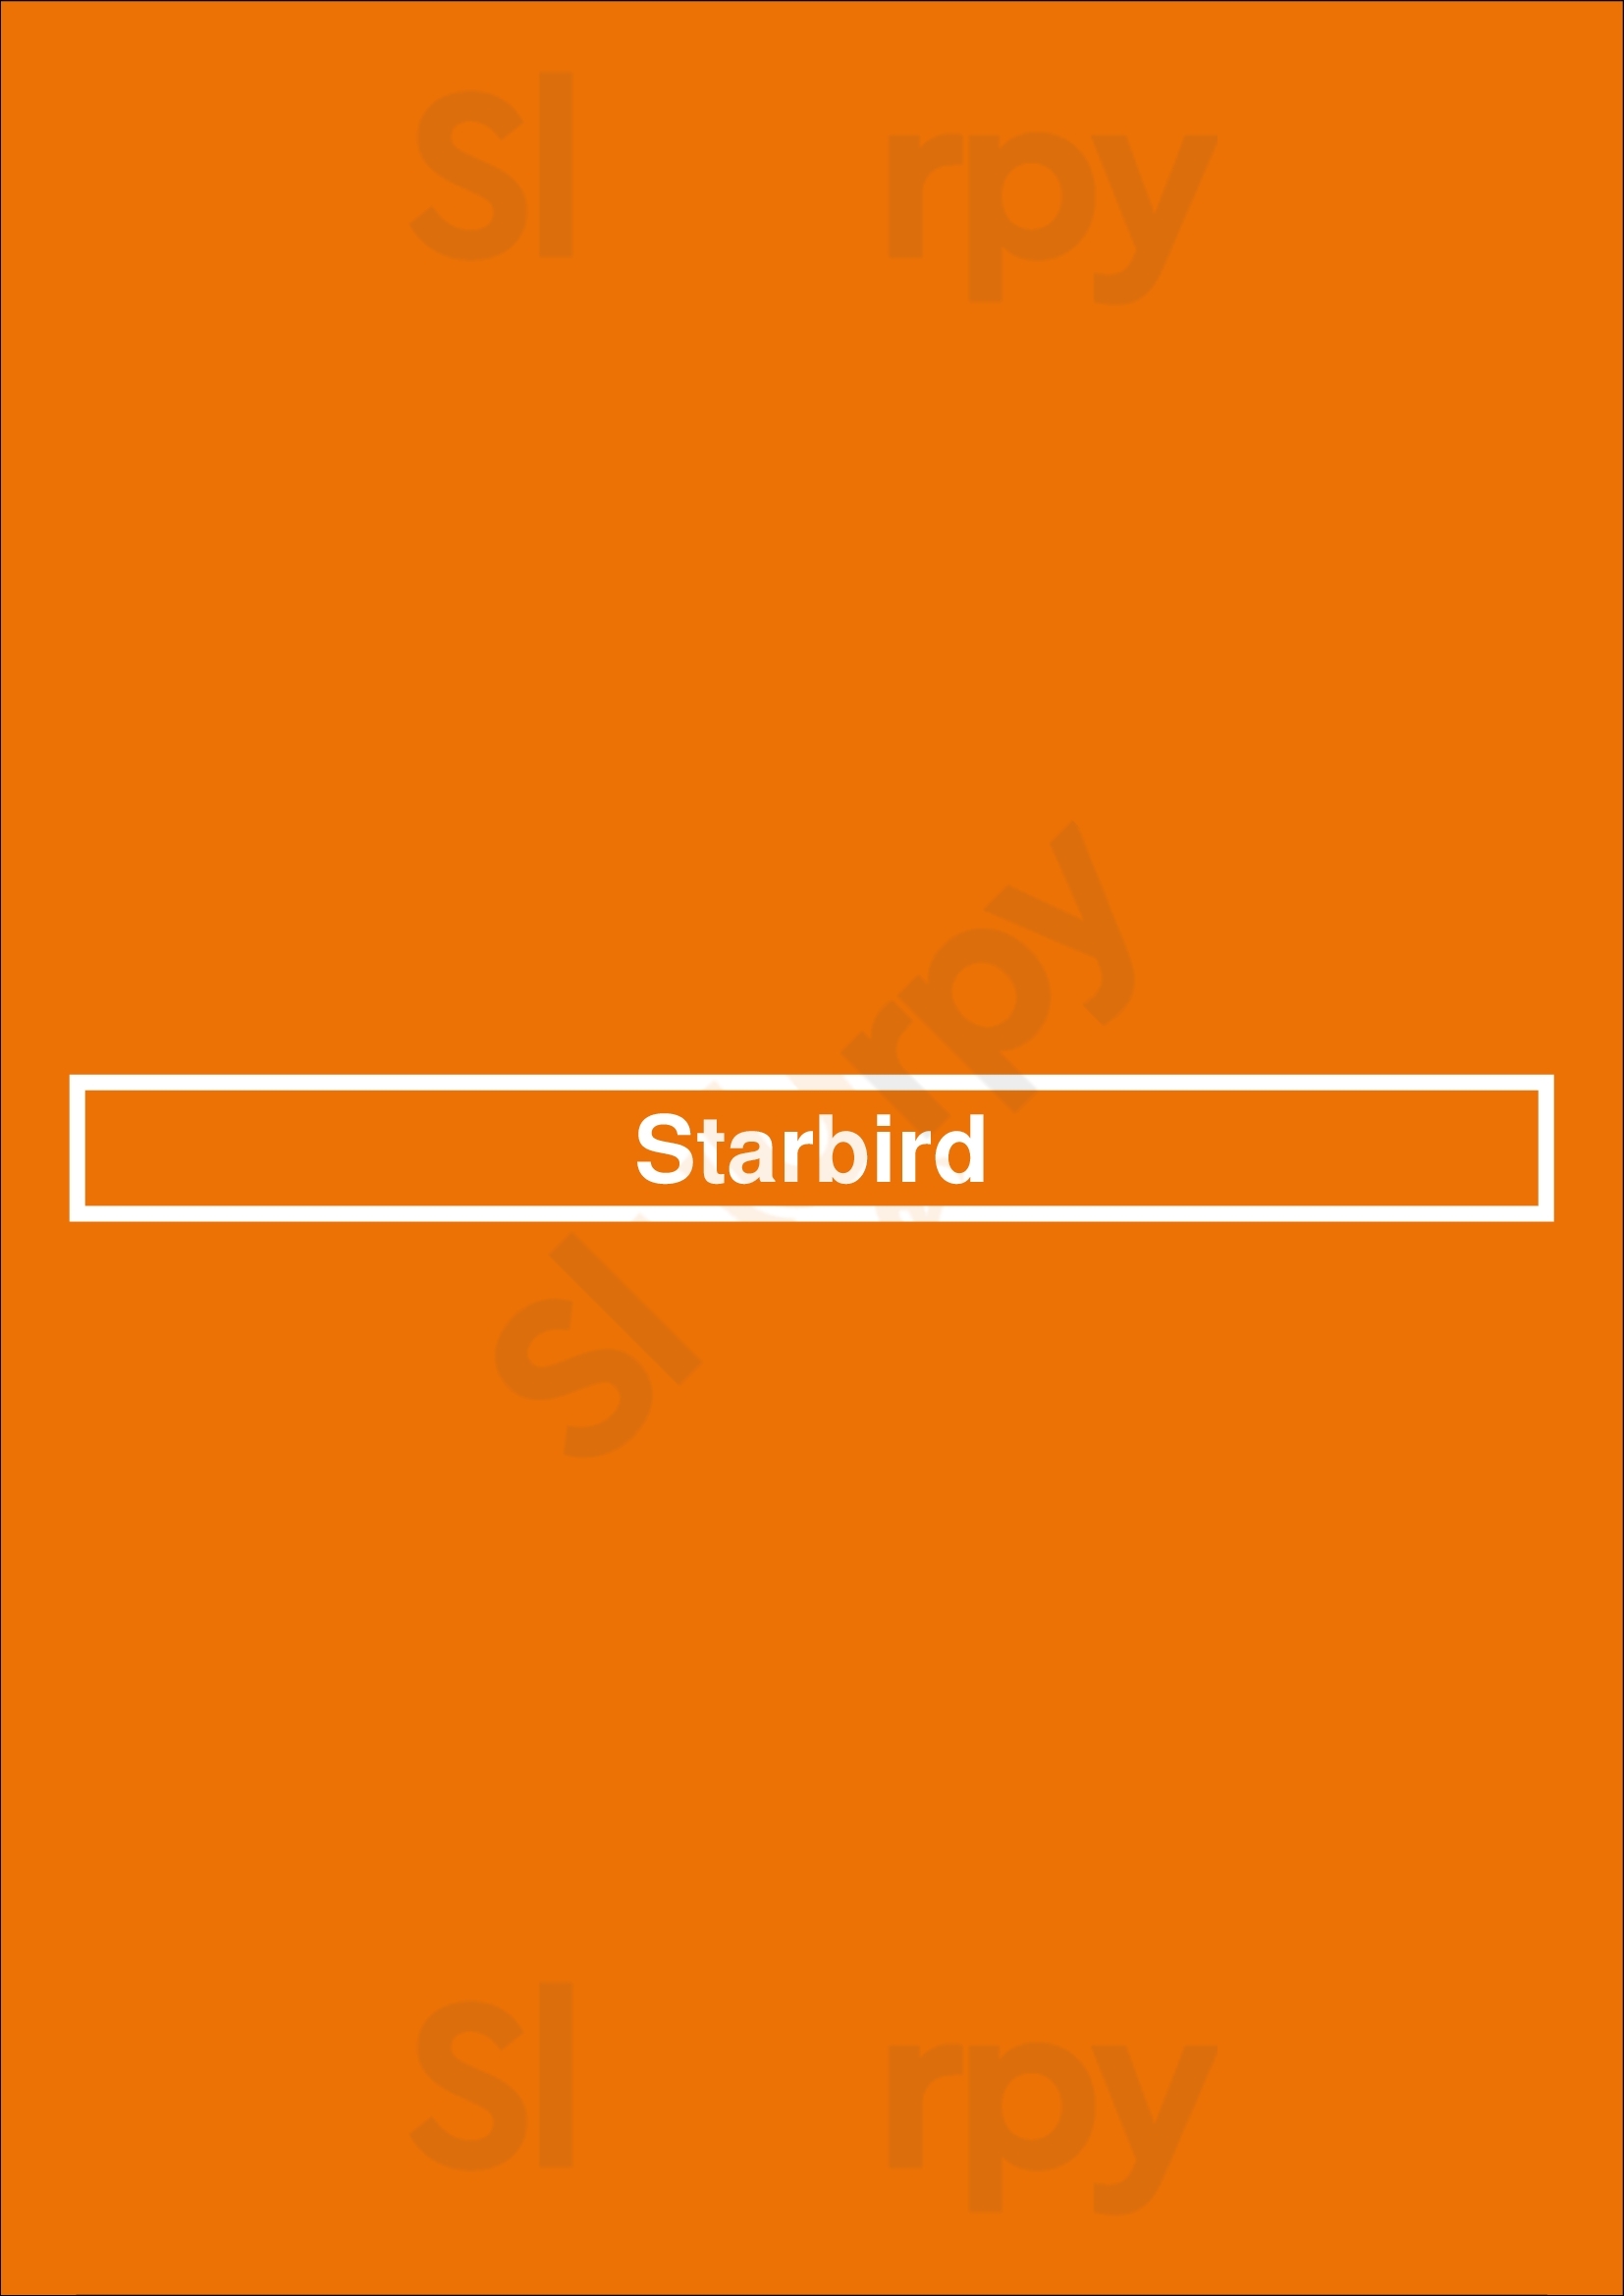 Starbird San Jose Menu - 1